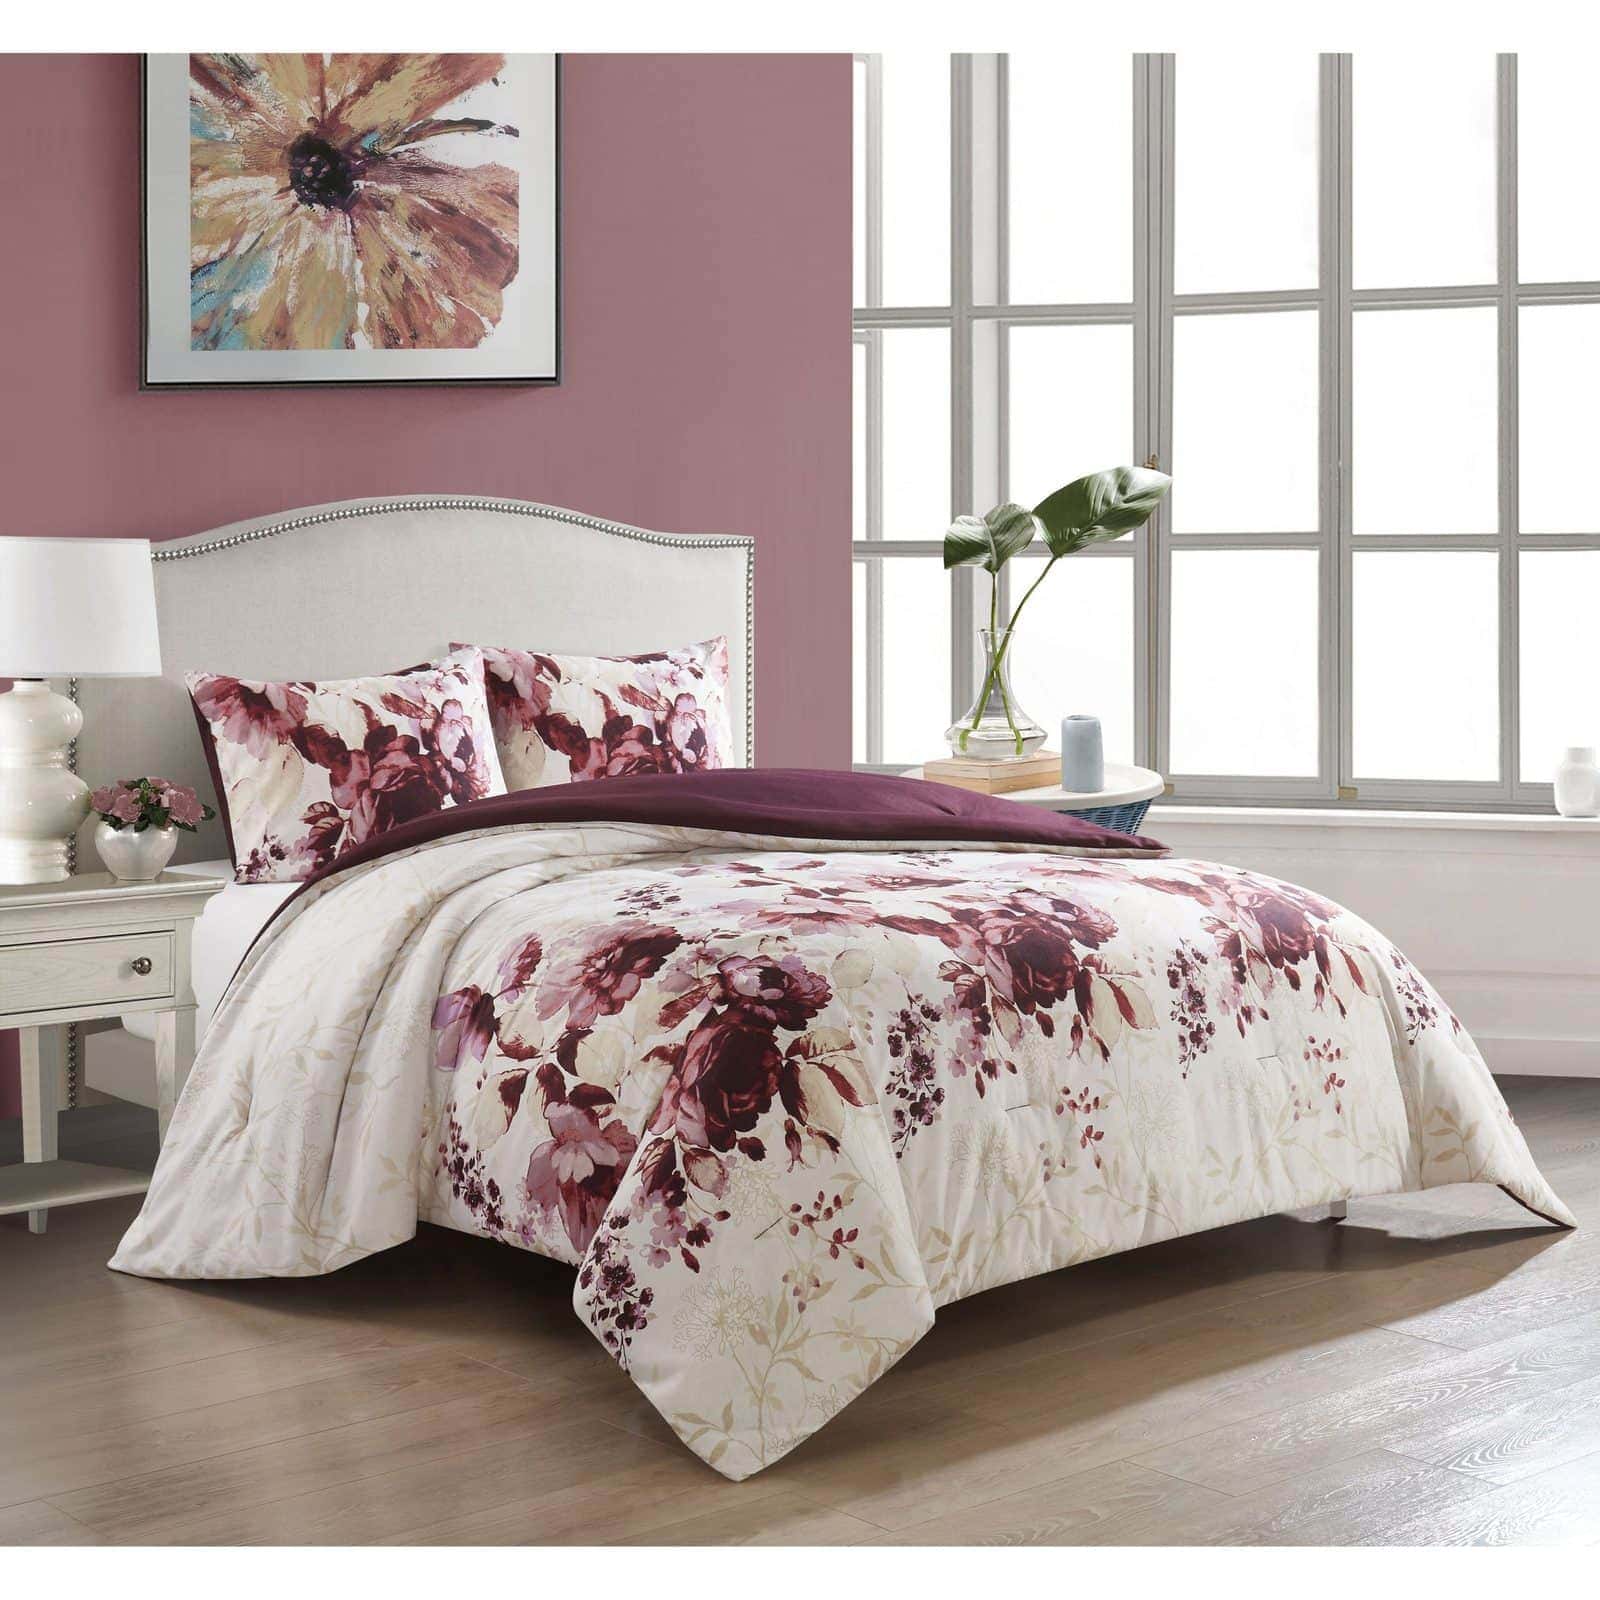 Crea dormitorios femeninos con blanco violeta y marfil